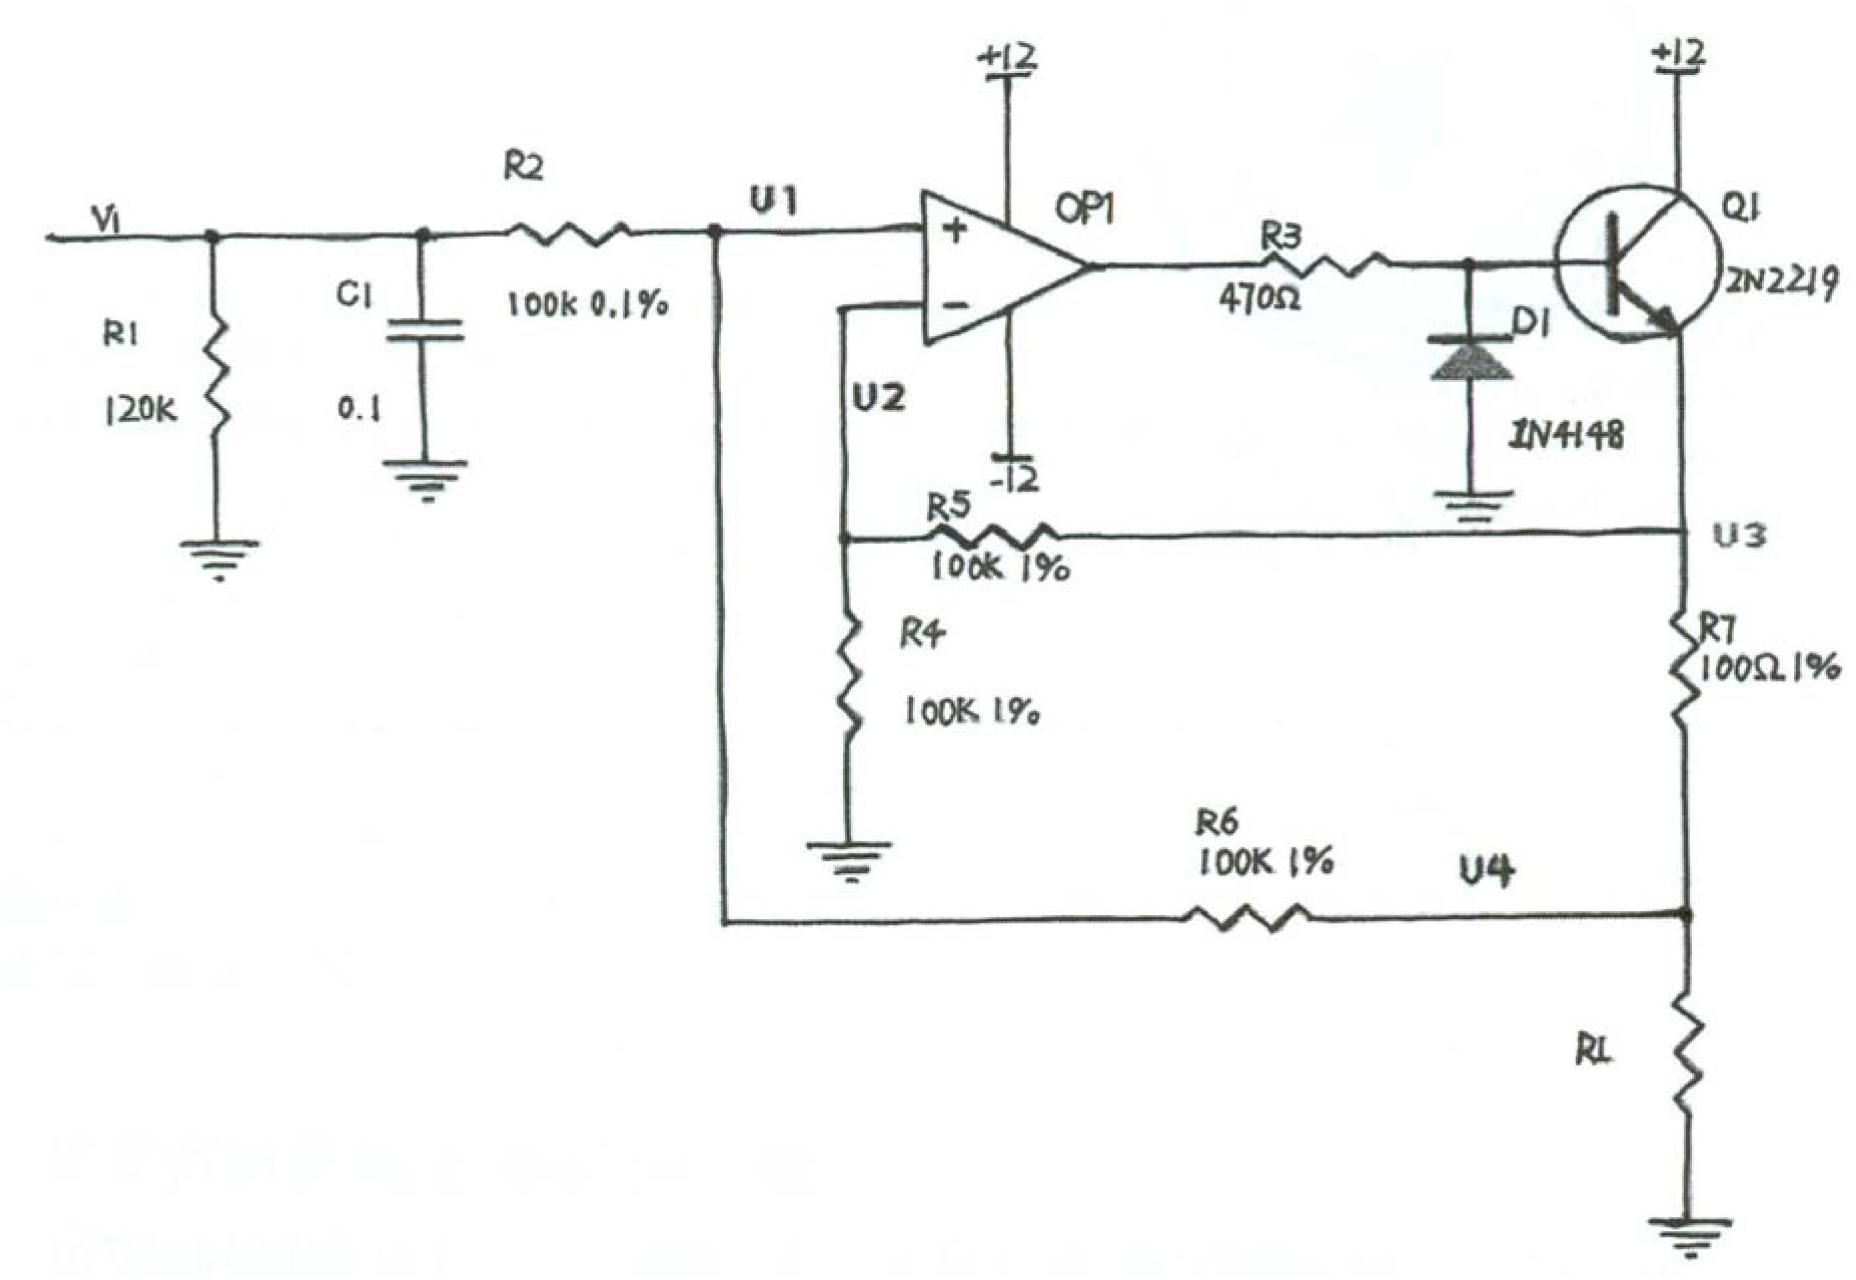 Pulse generation circuit, voltage measuring circuit and voltage measuring method